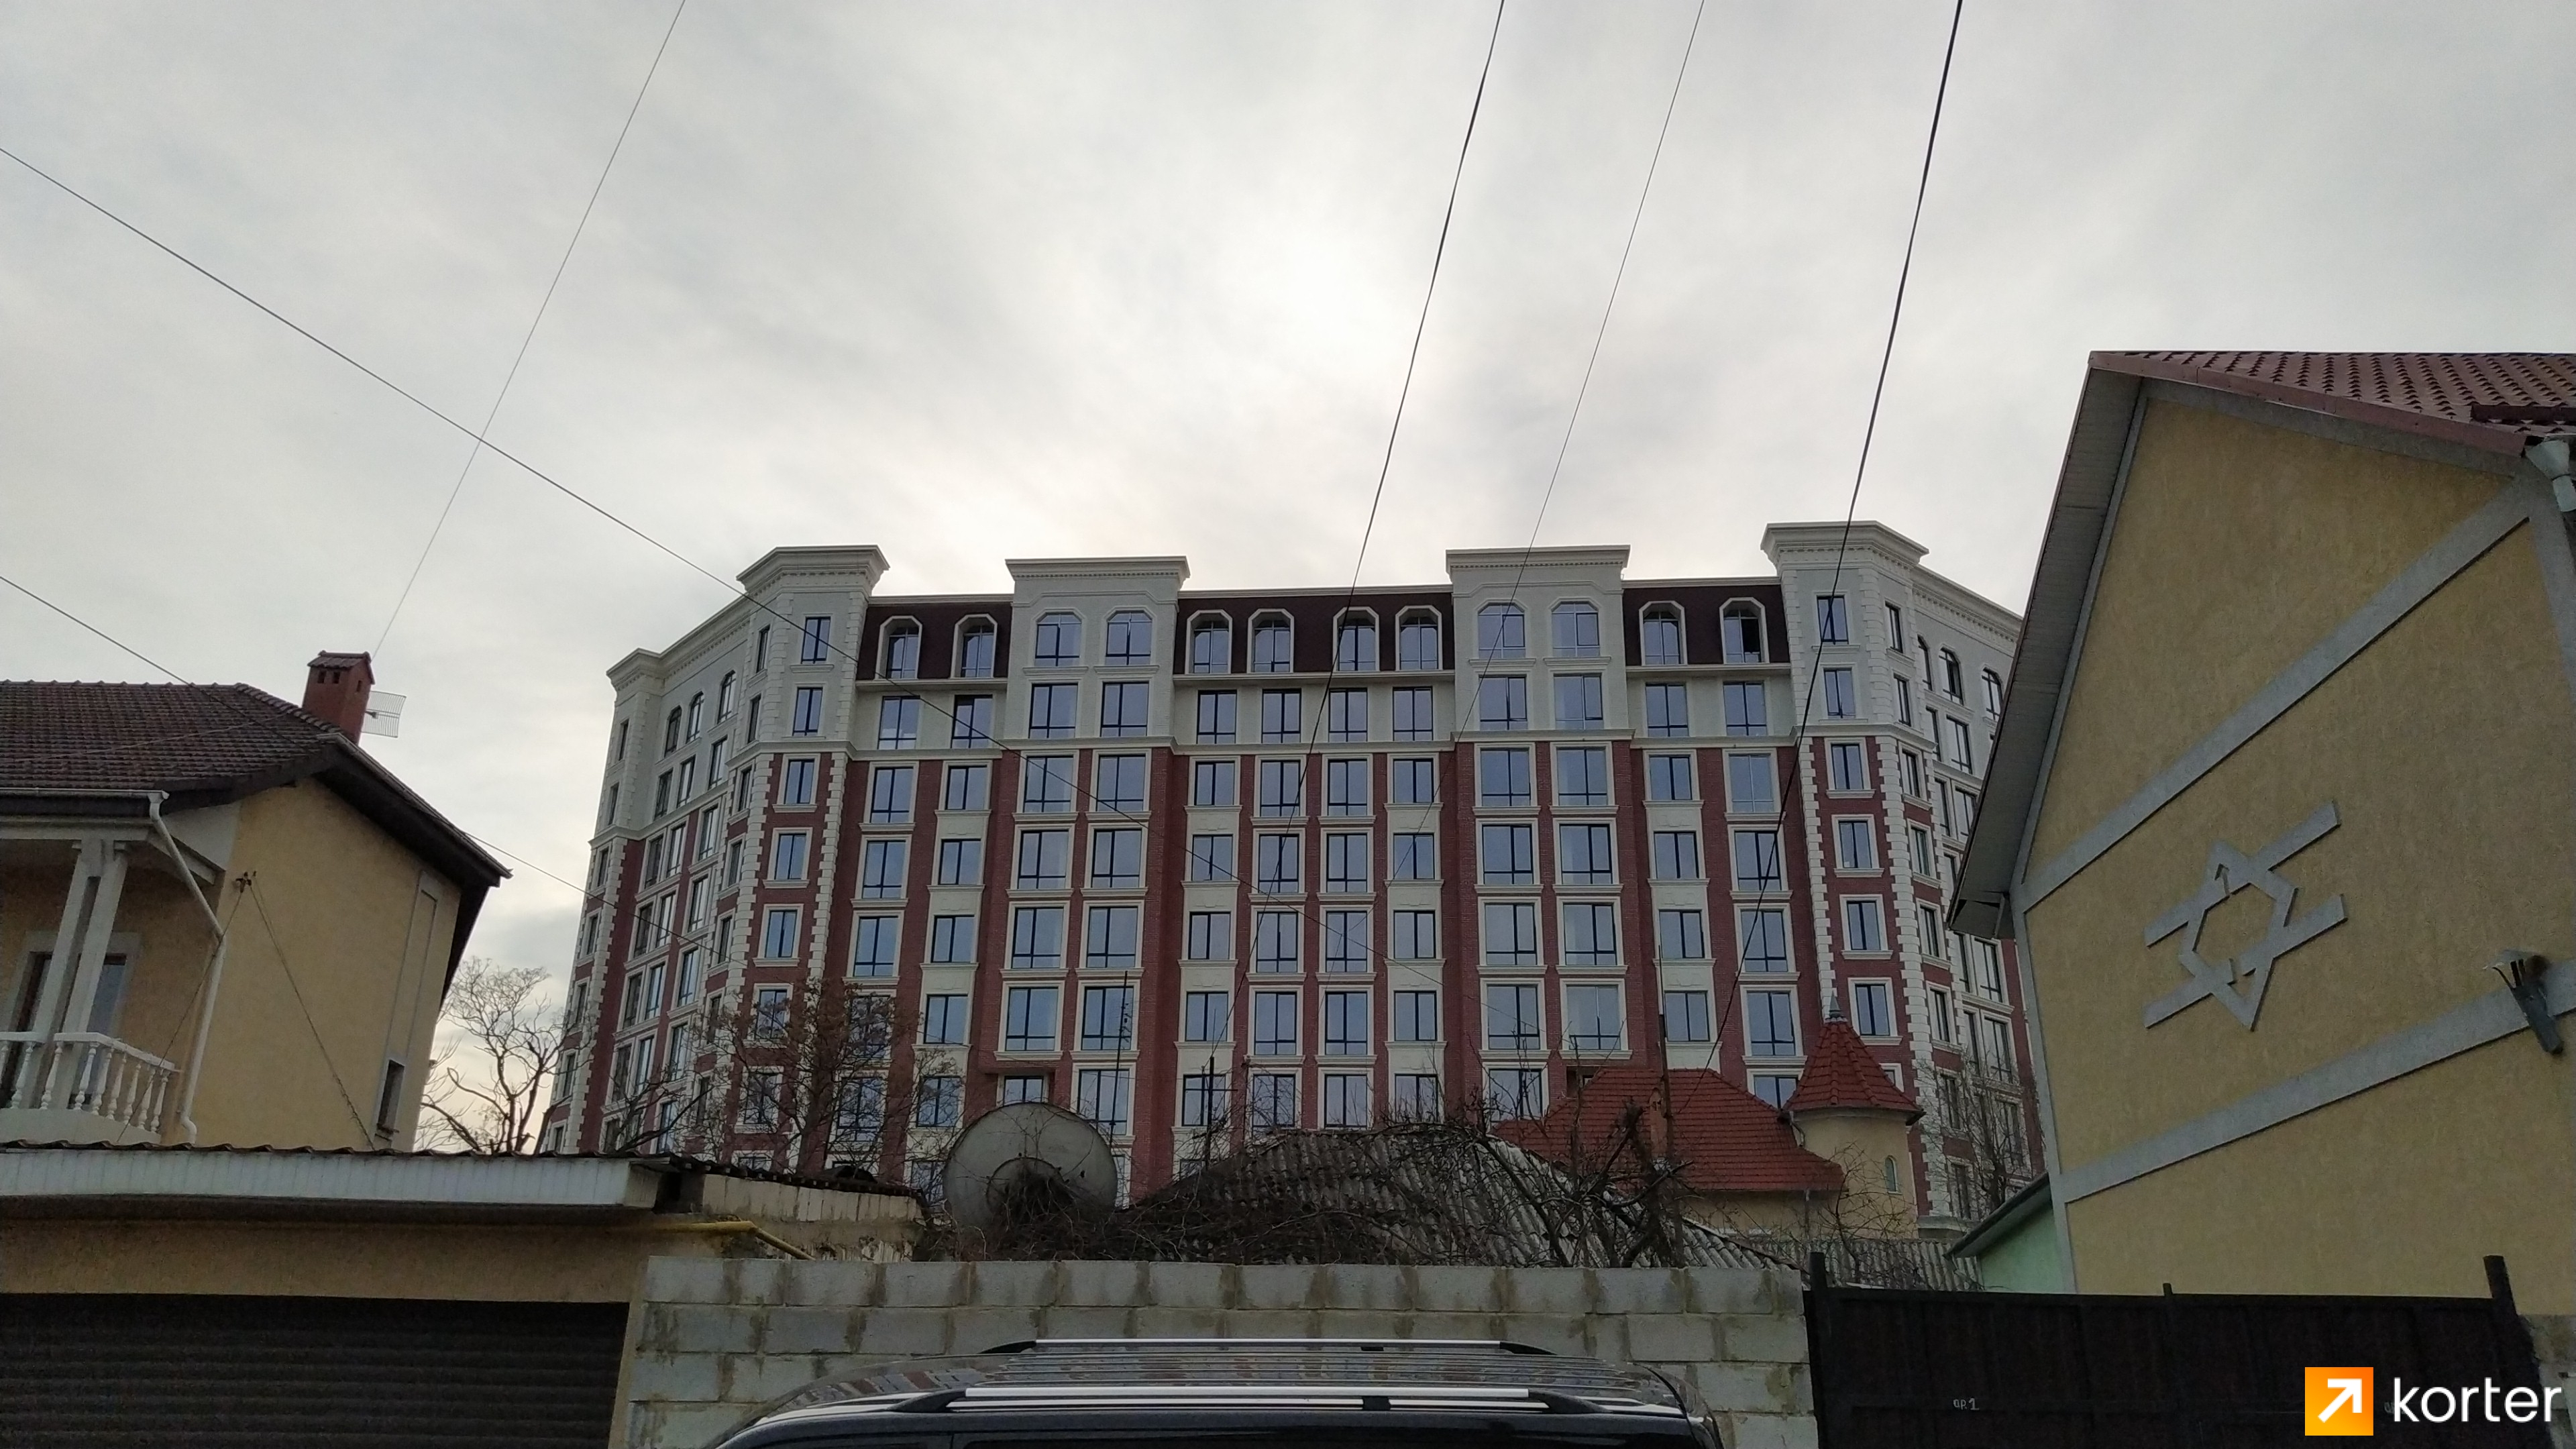 Evoluția construcției Complexului Complex Avram Iancu - Punct 3, Februarie 2020